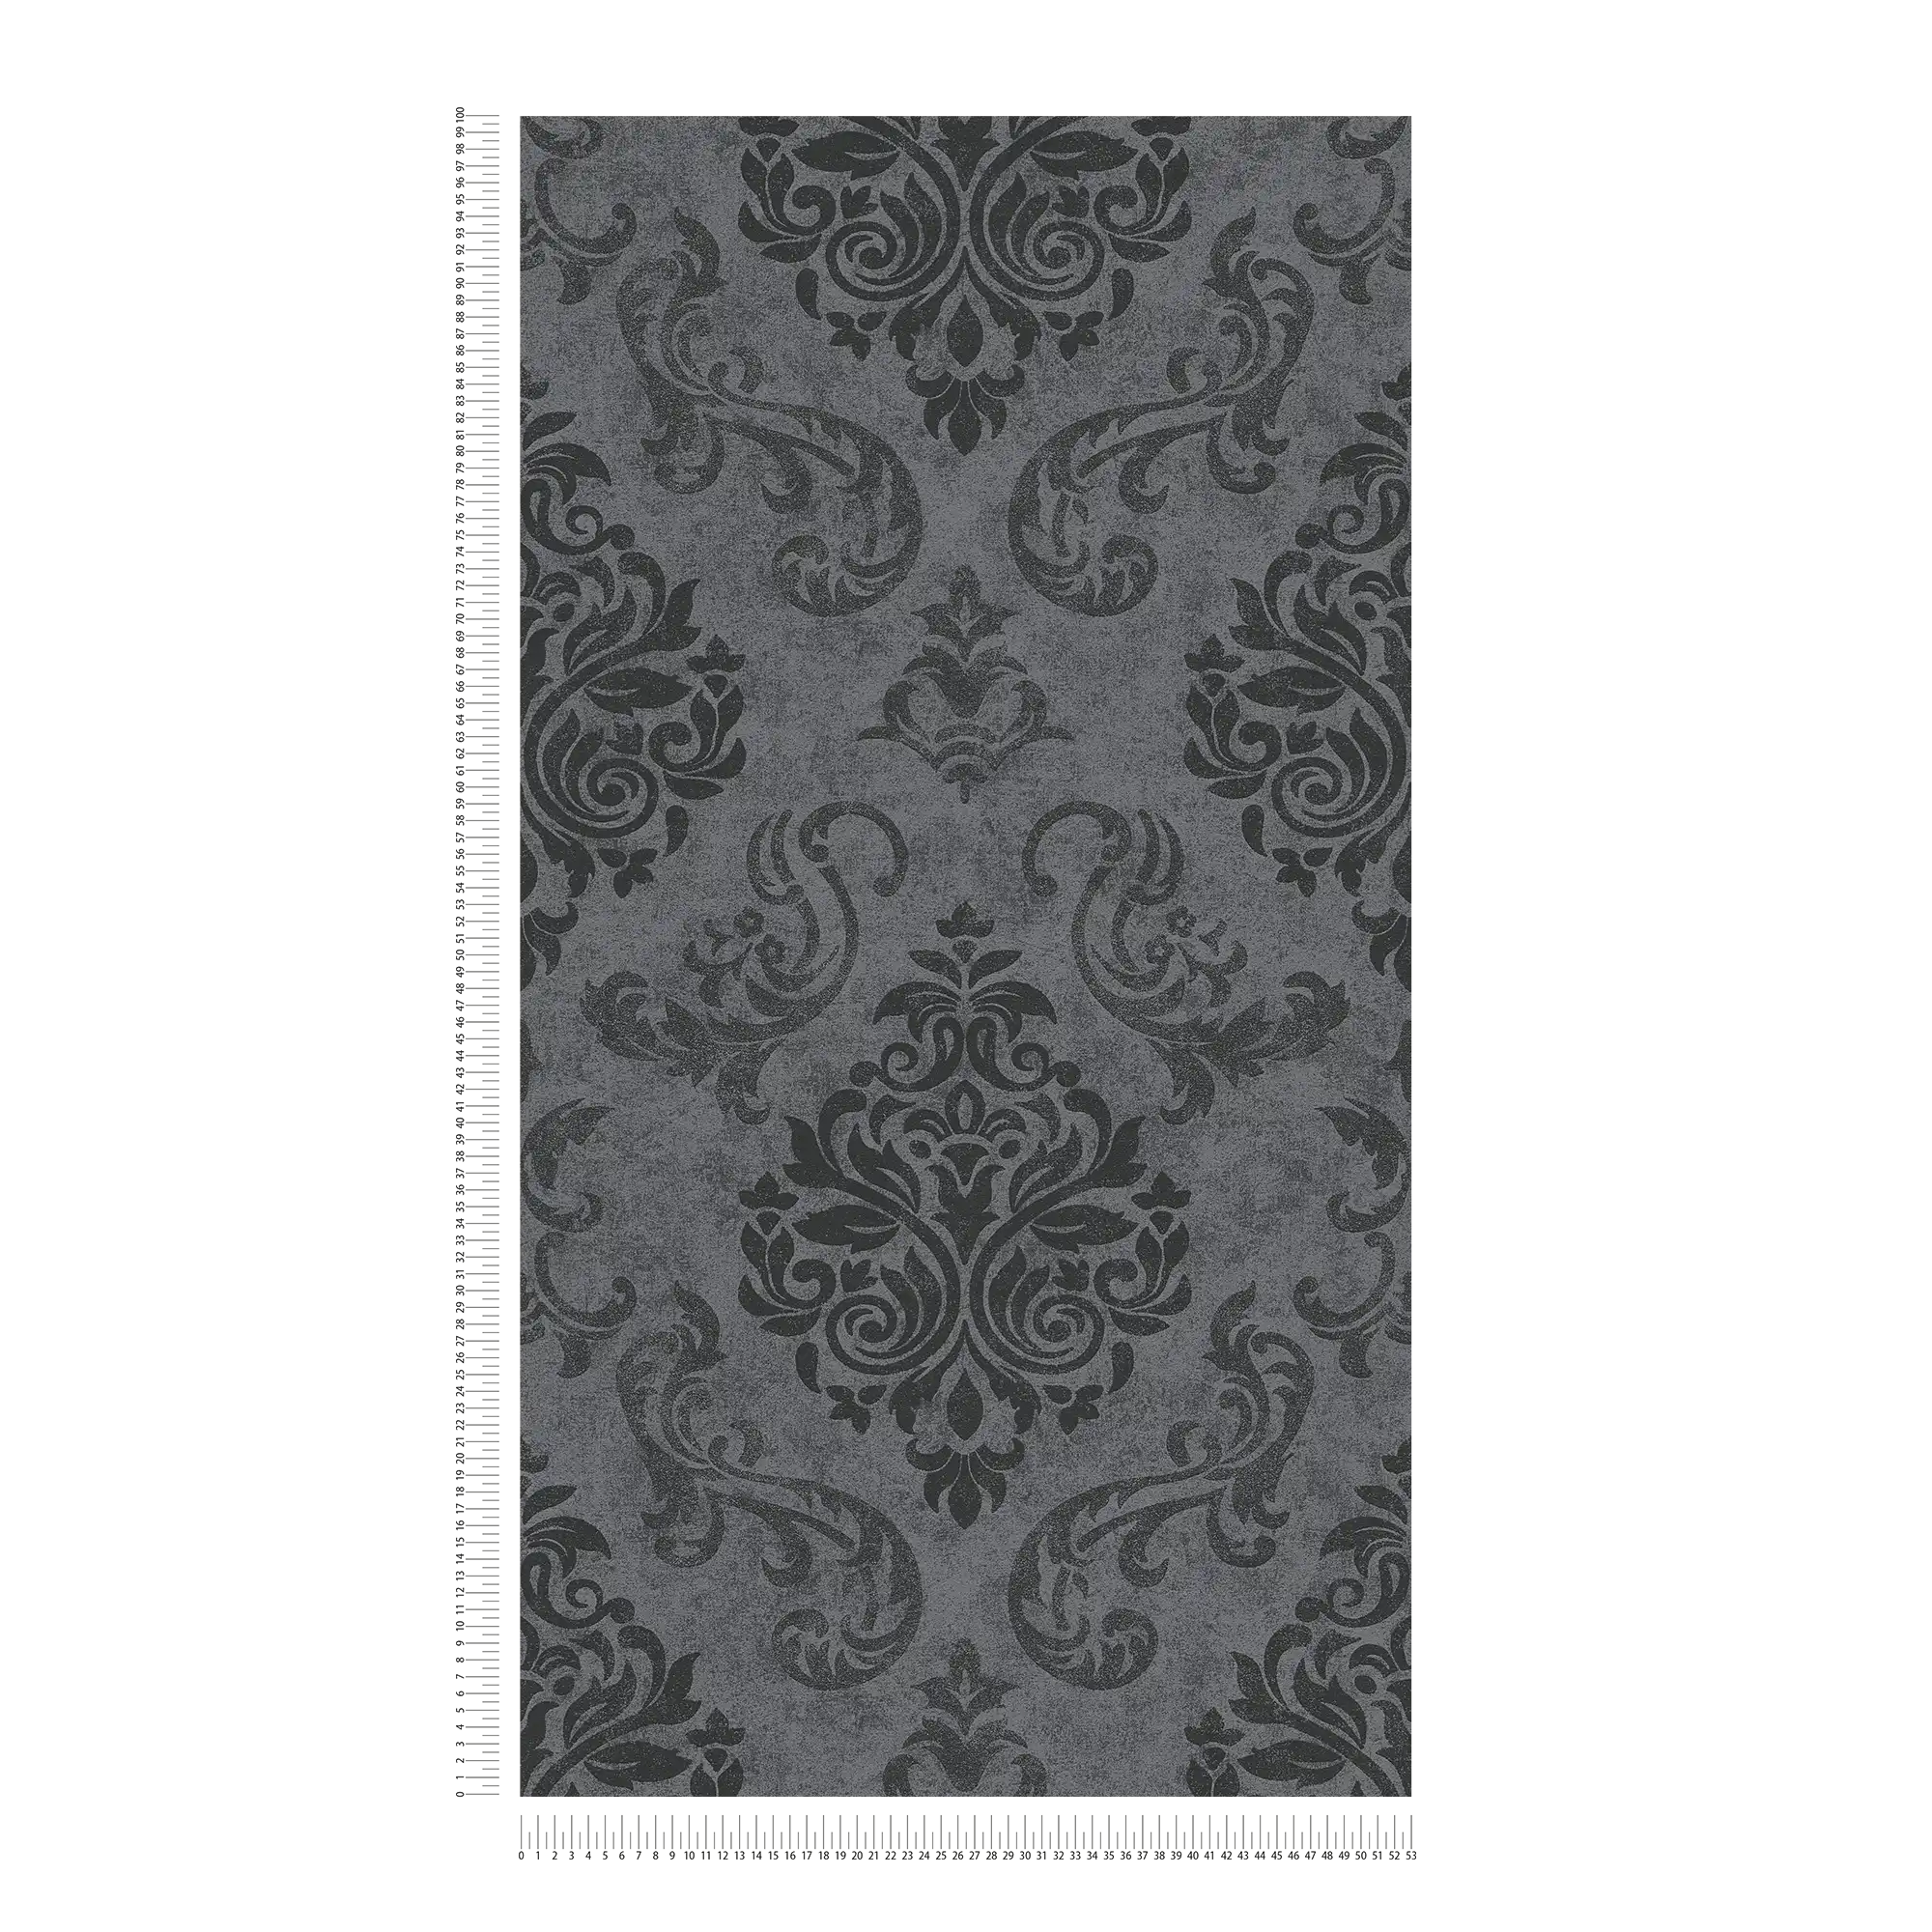             Carta da parati ornamentale in stile barocco con effetto glitter - grigio, metallizzato, nero
        